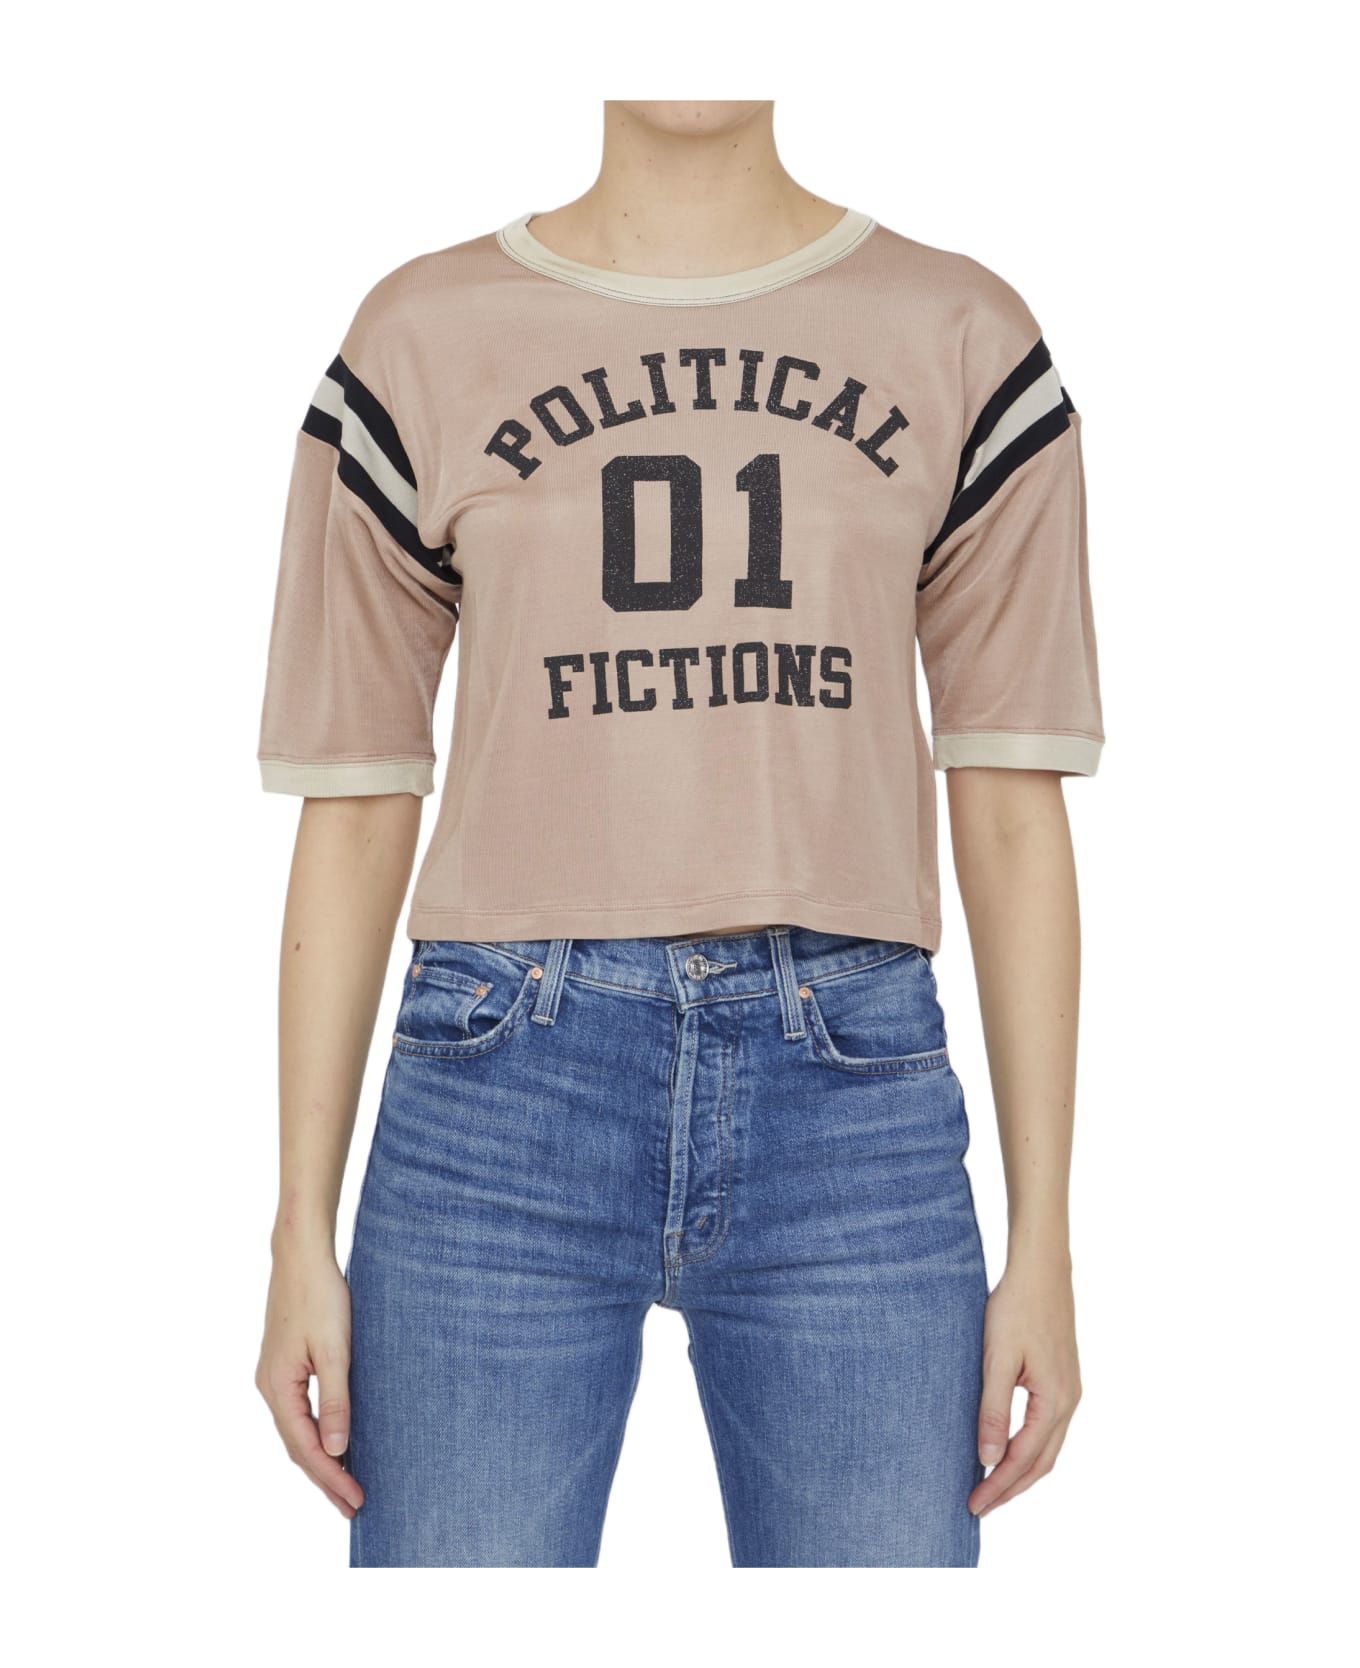 Saint Laurent Political Fictions Cropped T-shirt - PINK Tシャツ